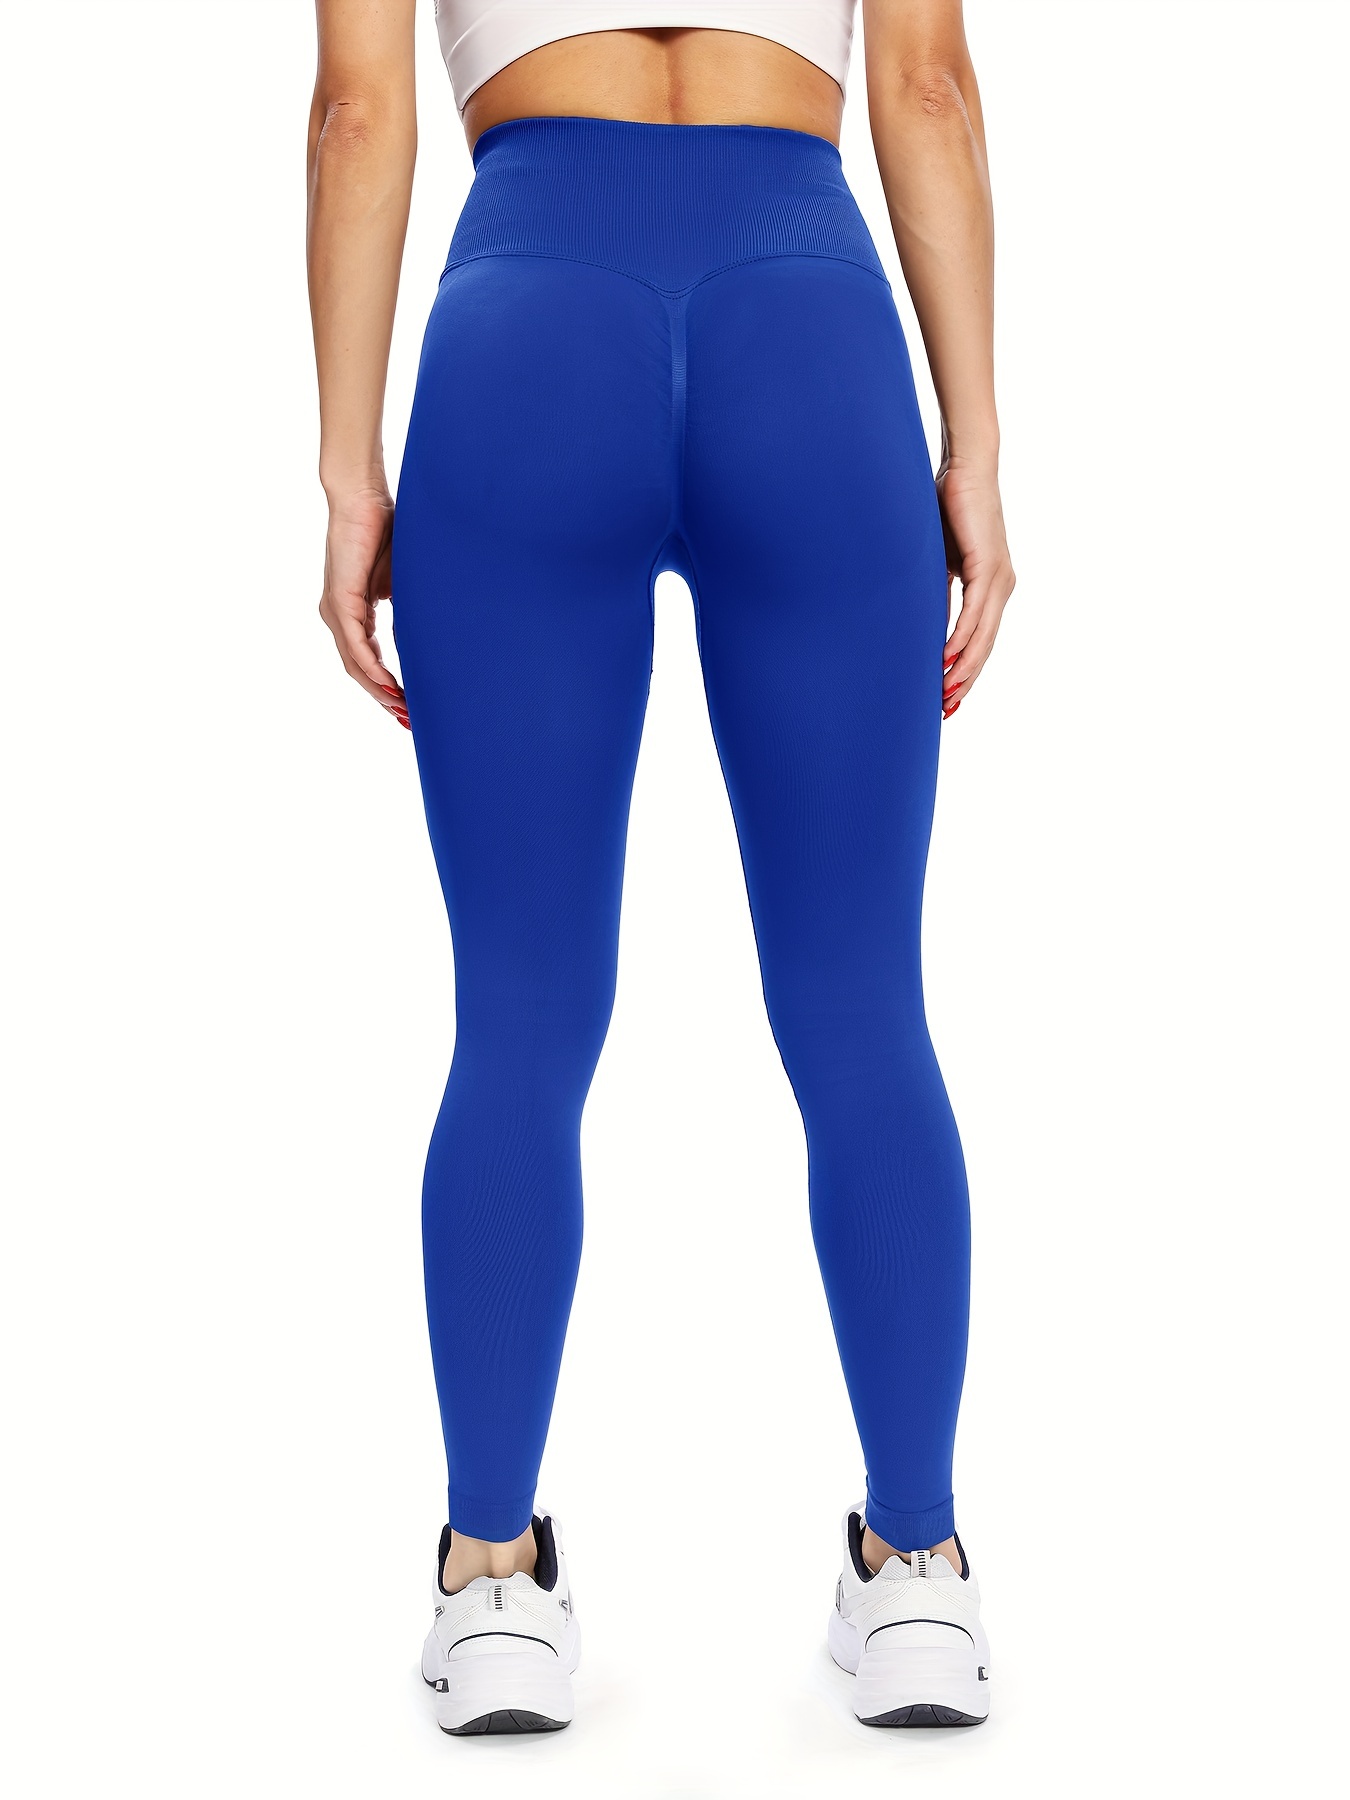 Mulheres calças de yoga esportes leggings exercício esportivo elástico  fitness gym leggings cintura alta sem costura empurrar para cima calças -  Amor Lindo